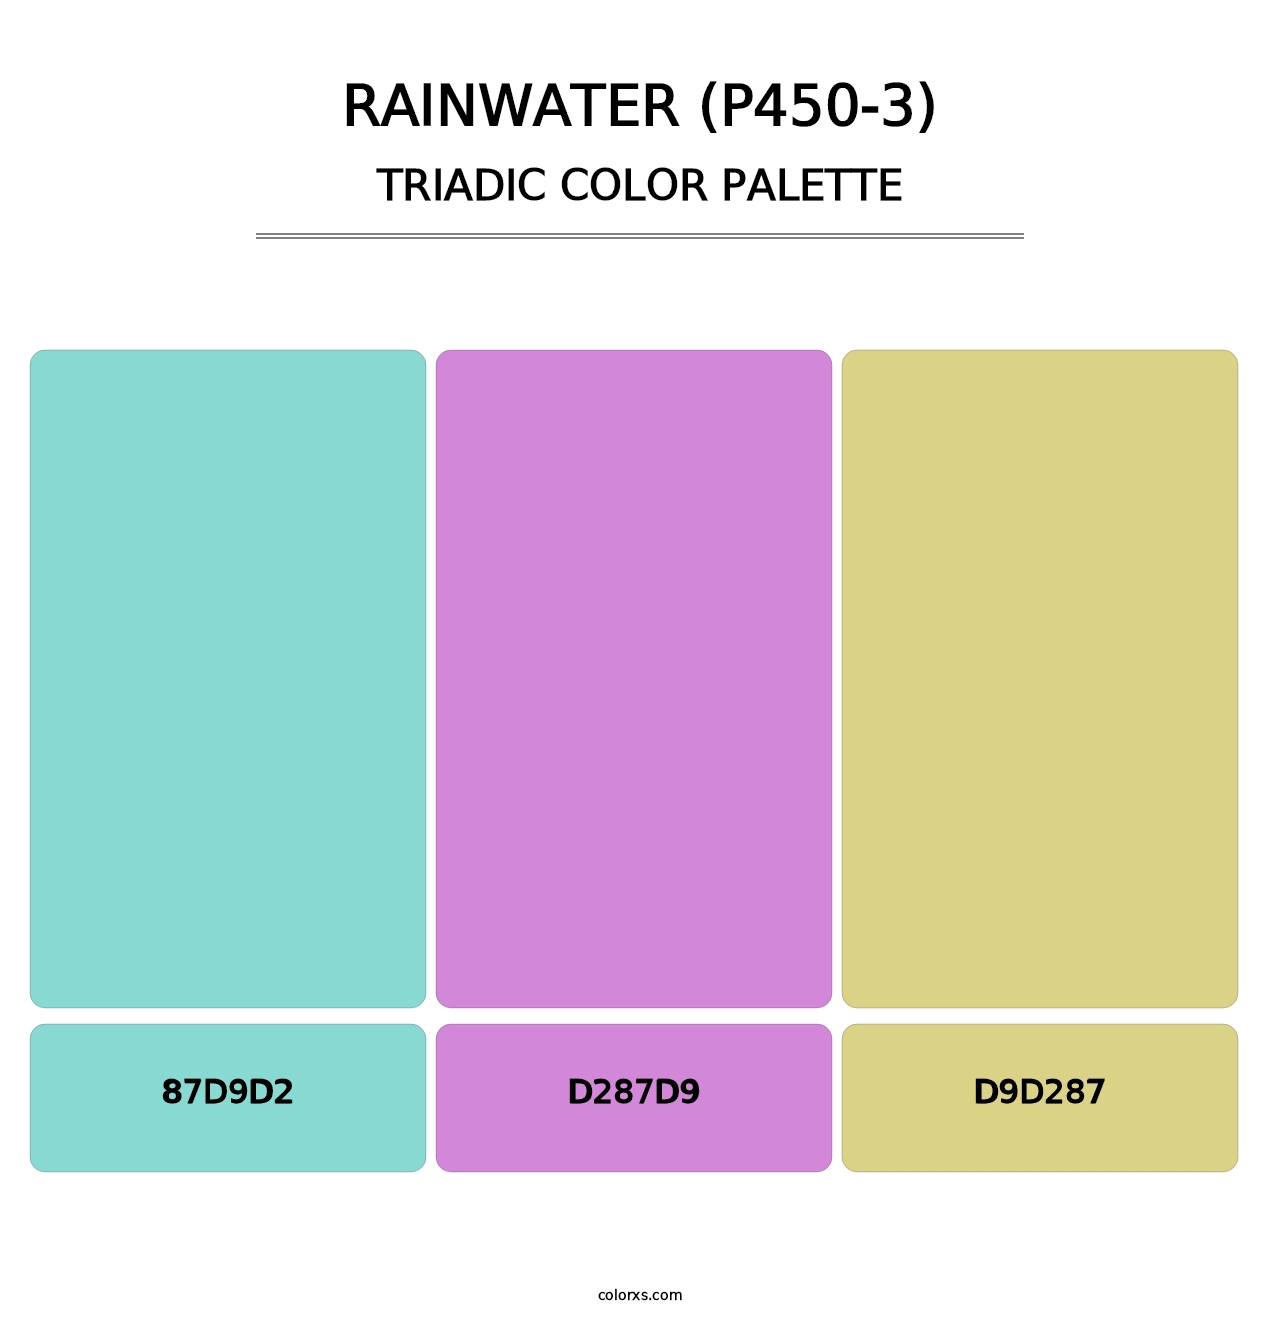 Rainwater (P450-3) - Triadic Color Palette